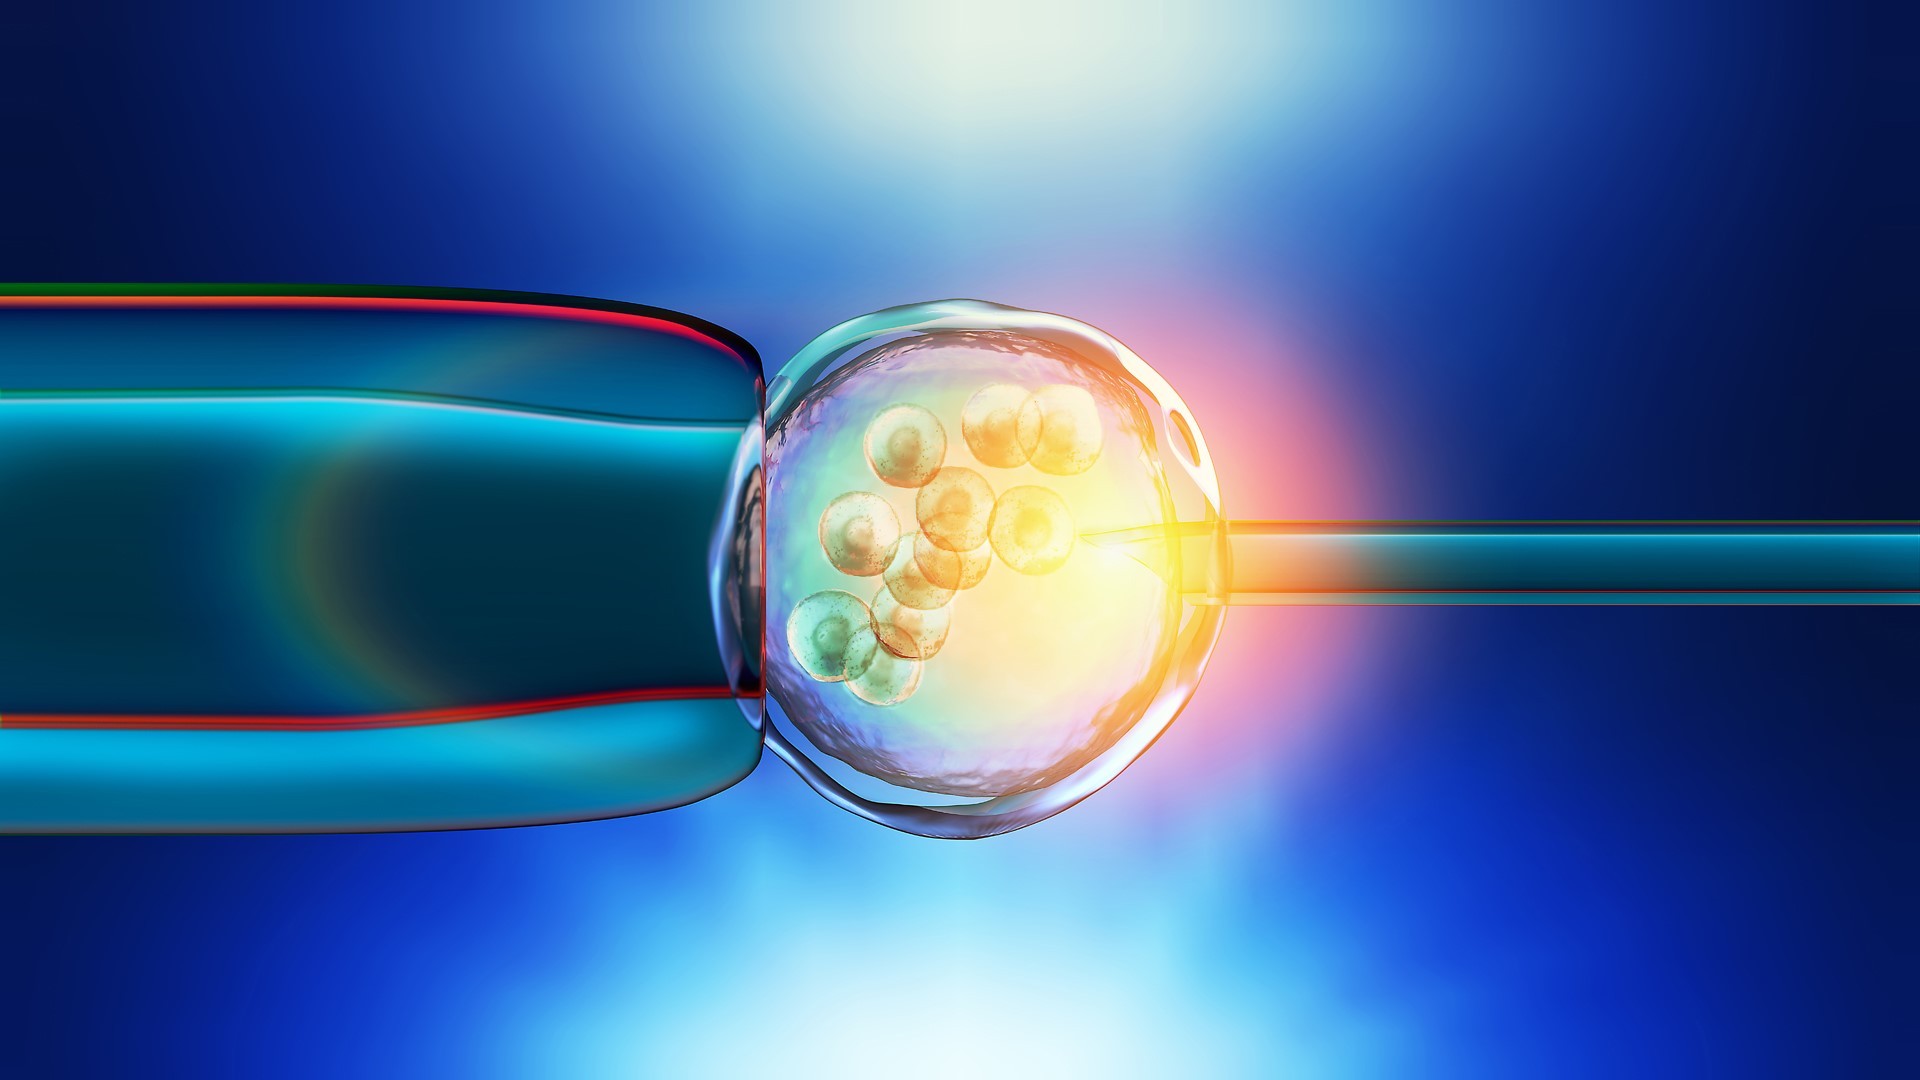 Nueva tecnica genetica para crear embriones humanos